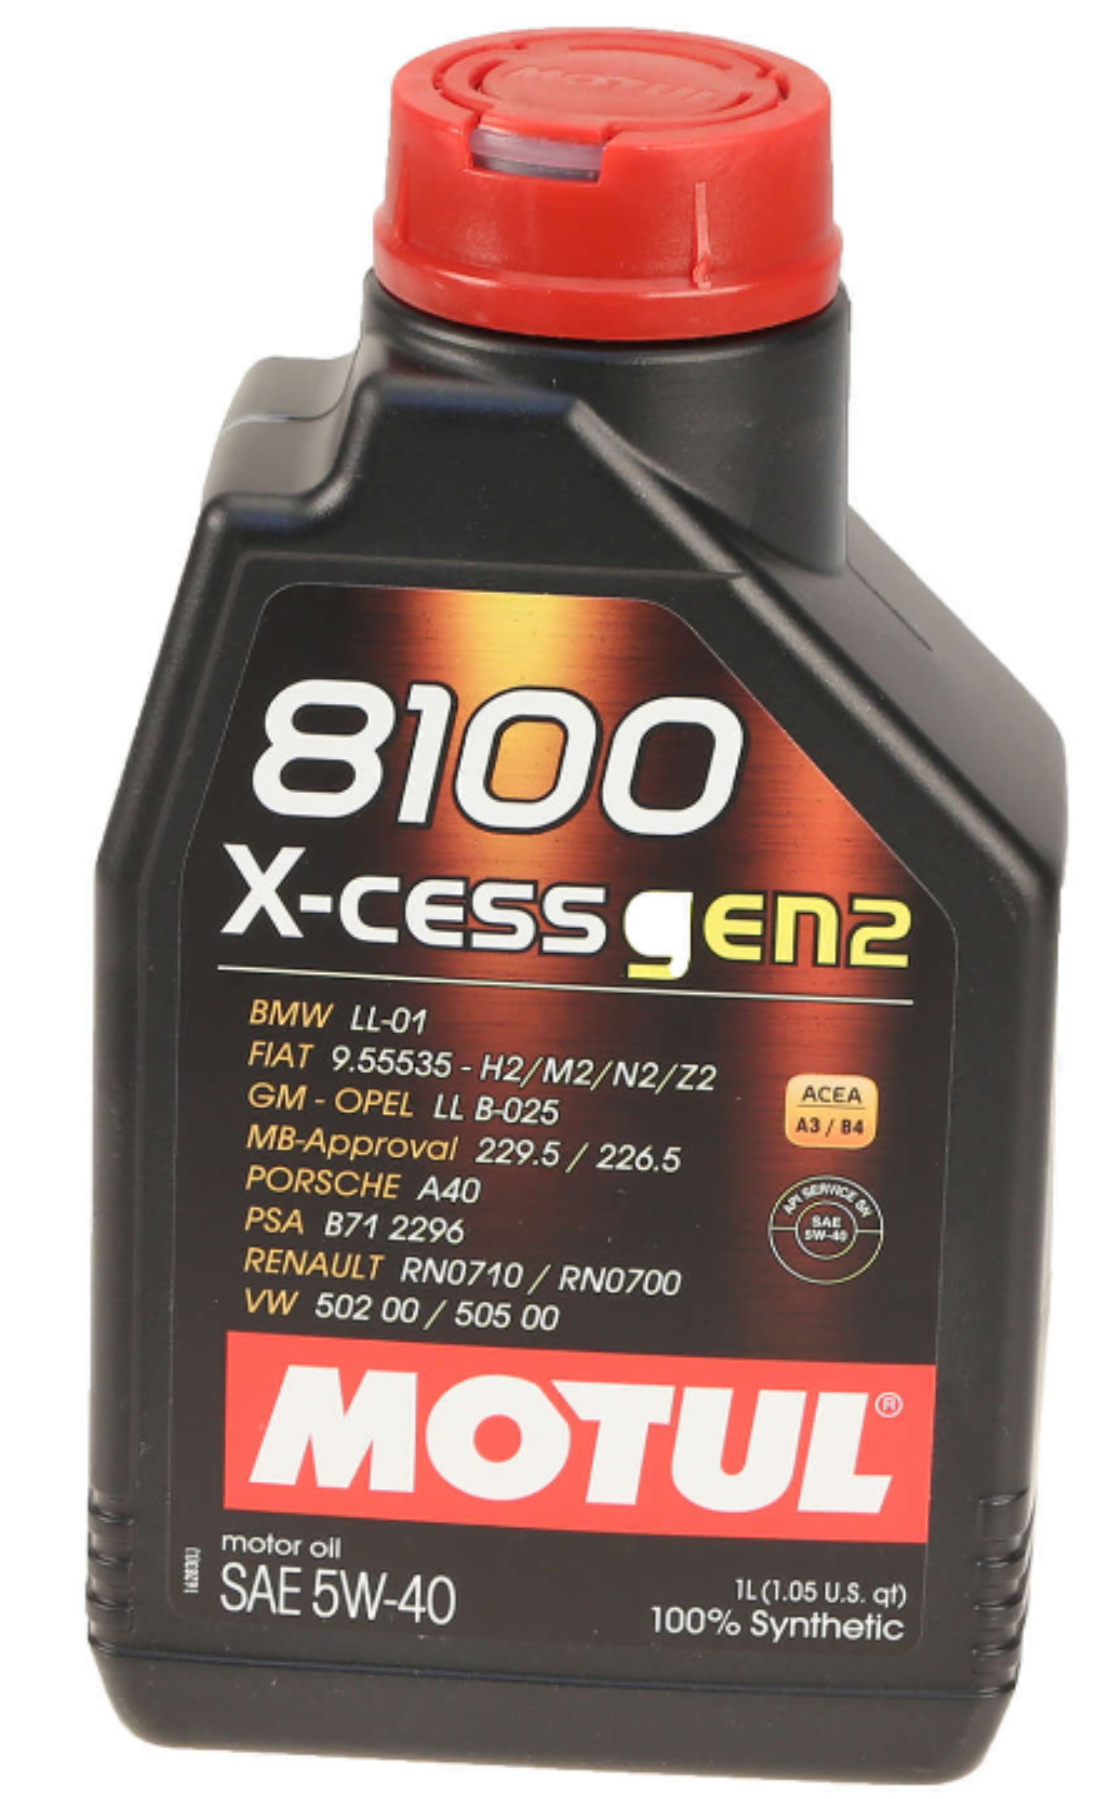 Motul 8100 X-CESS GEN2 Synthetic 5W-40 Motor Oil, 1 Liter